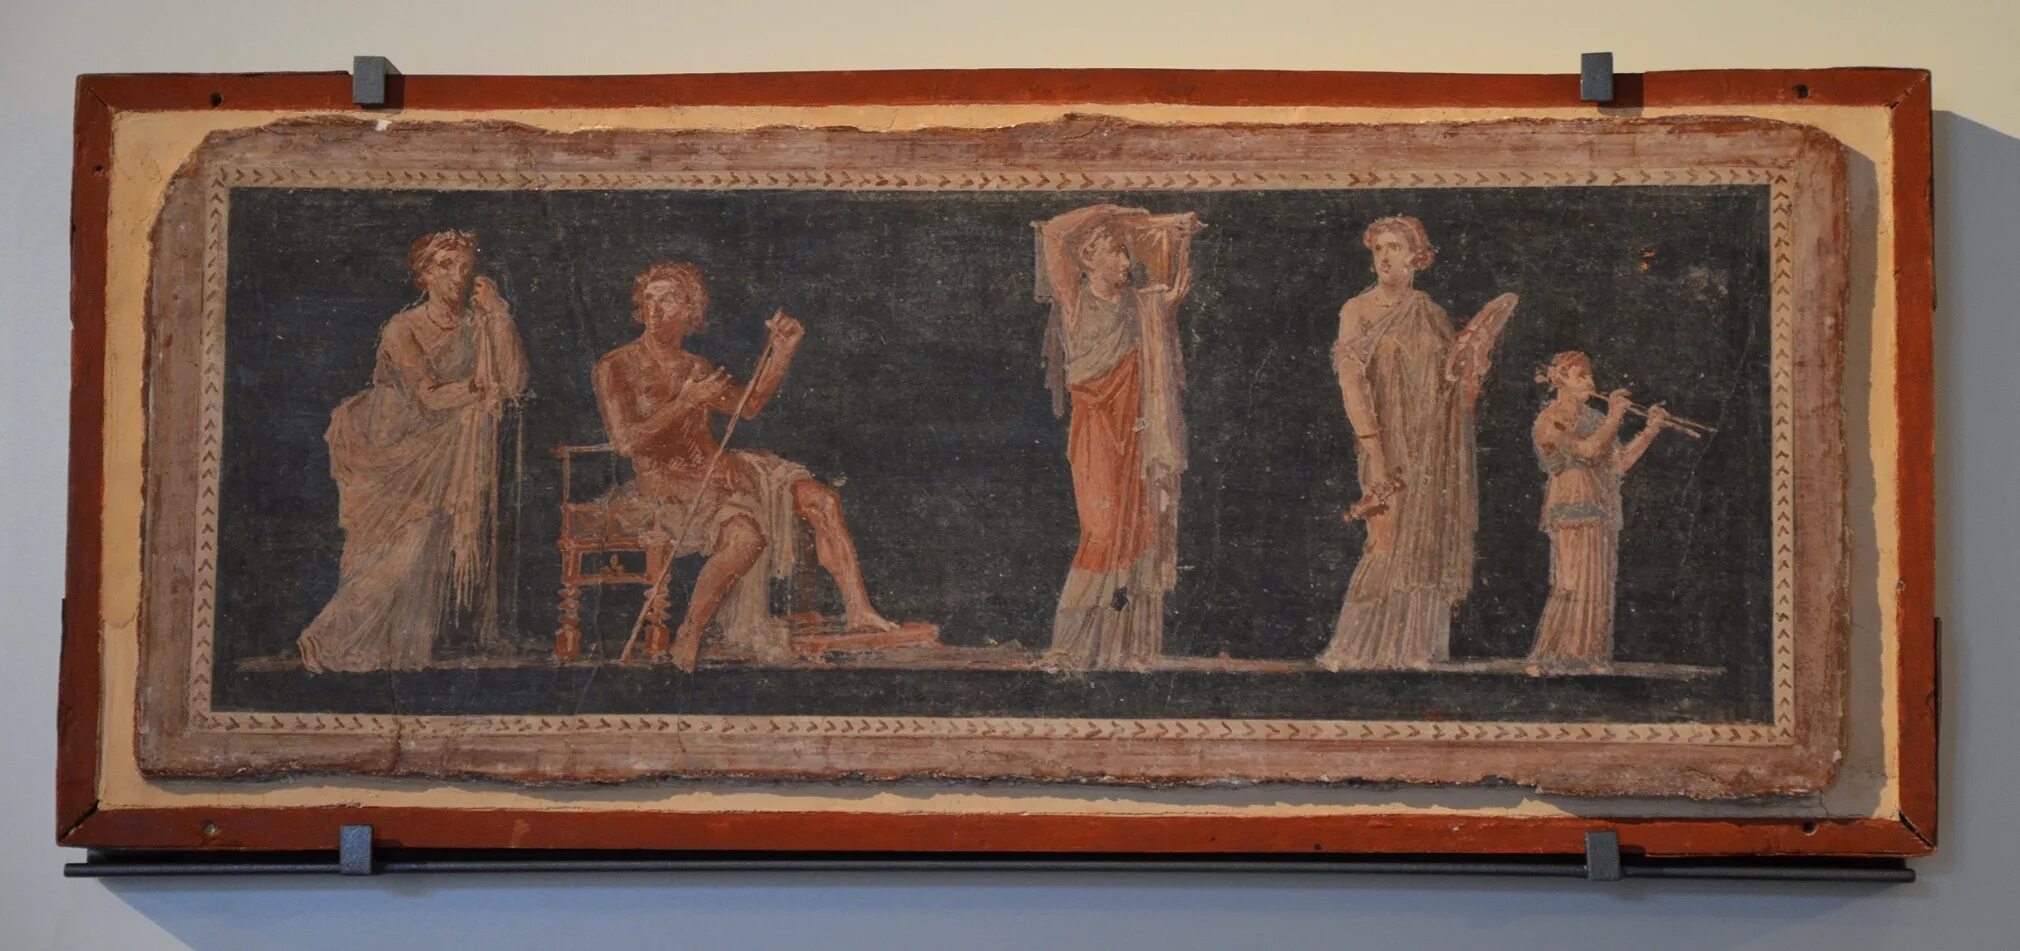 Римские сатирики. Легионер из Геркуланума. Raymond Waites Pompeii. Симпозиум Платона гравюра Пьетро музей.